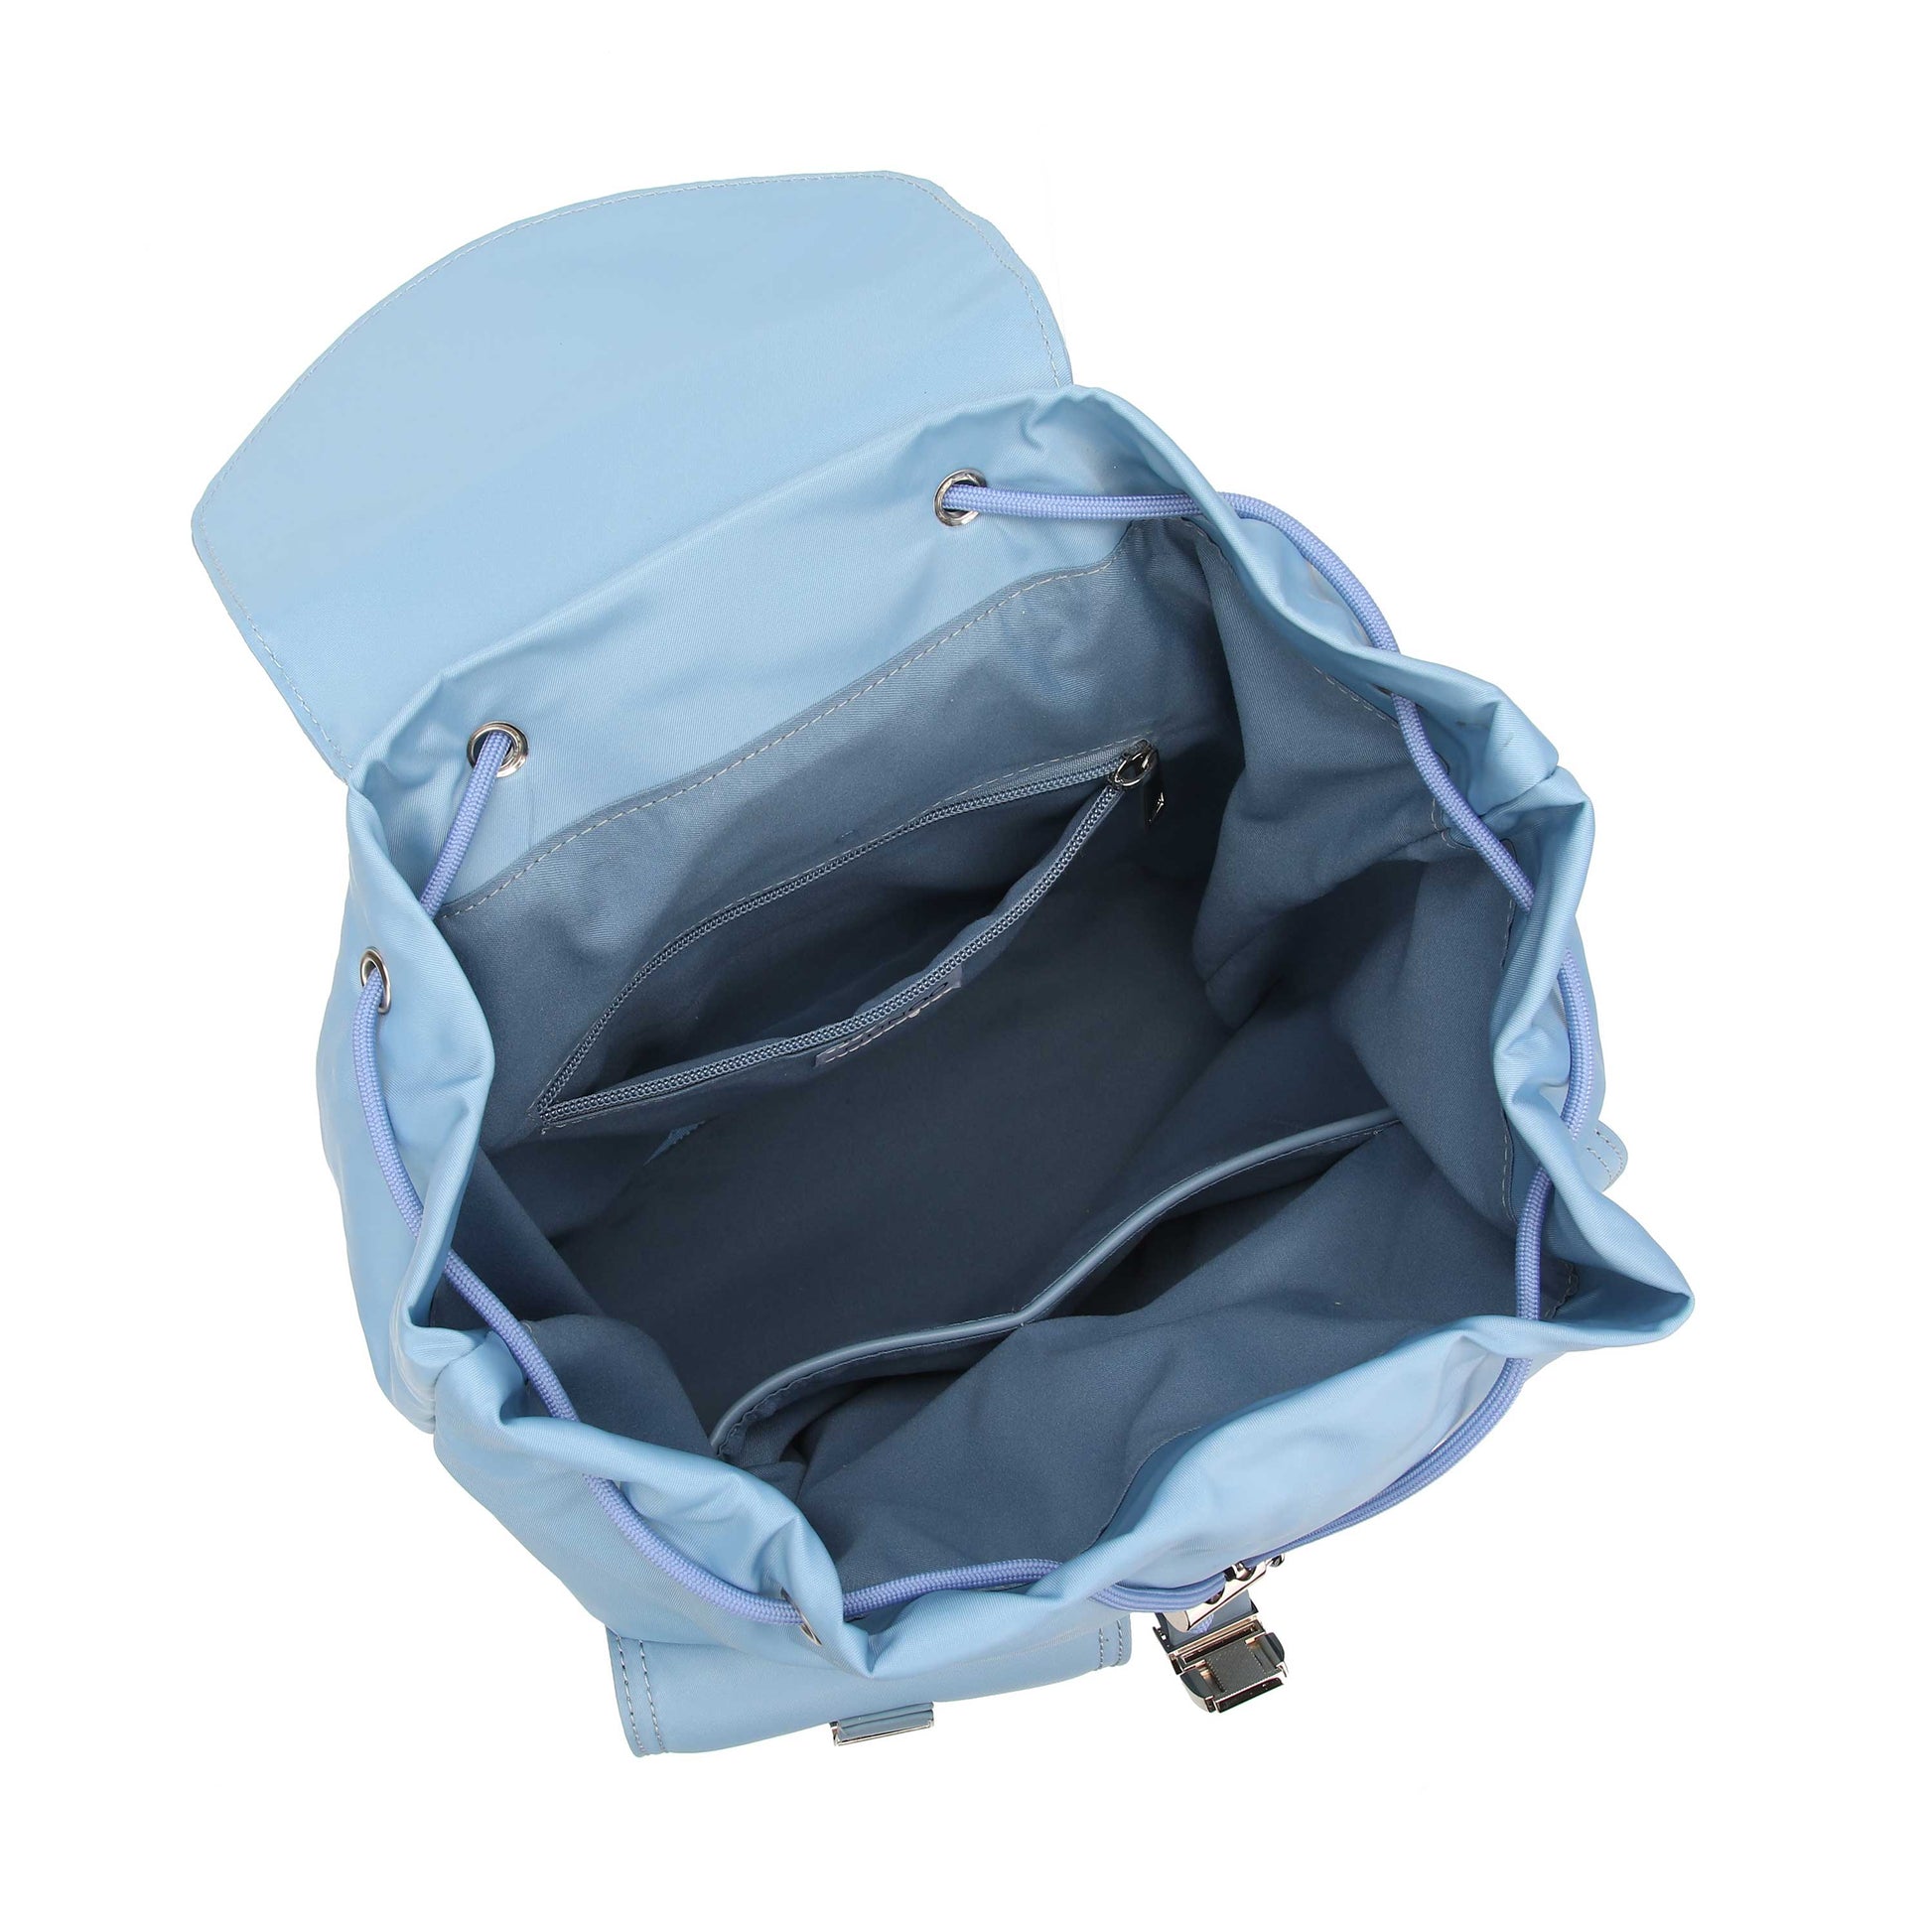 Núnoo backpack recycled nylon light blue Back pack Light blue